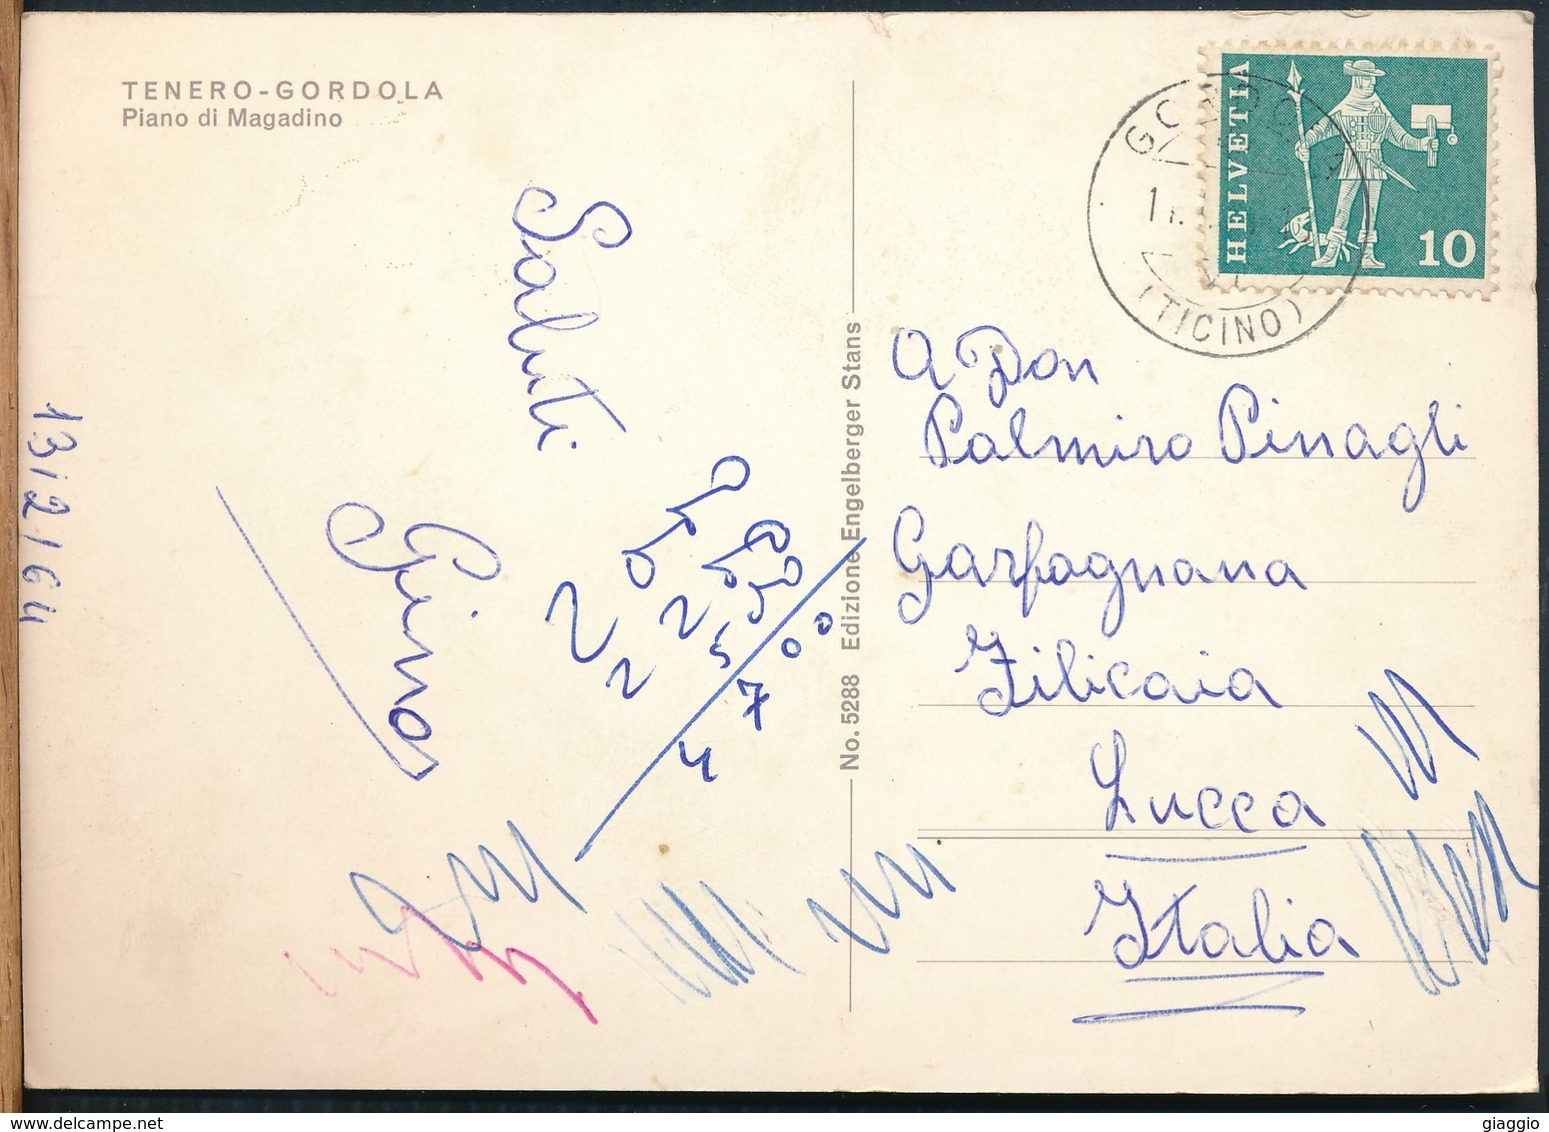 °°° 16050 - SVIZZERA - TI - TENERO GORDOLA - PIANO DI MAGADINO - 1964 With Stamps °°° - Gordola